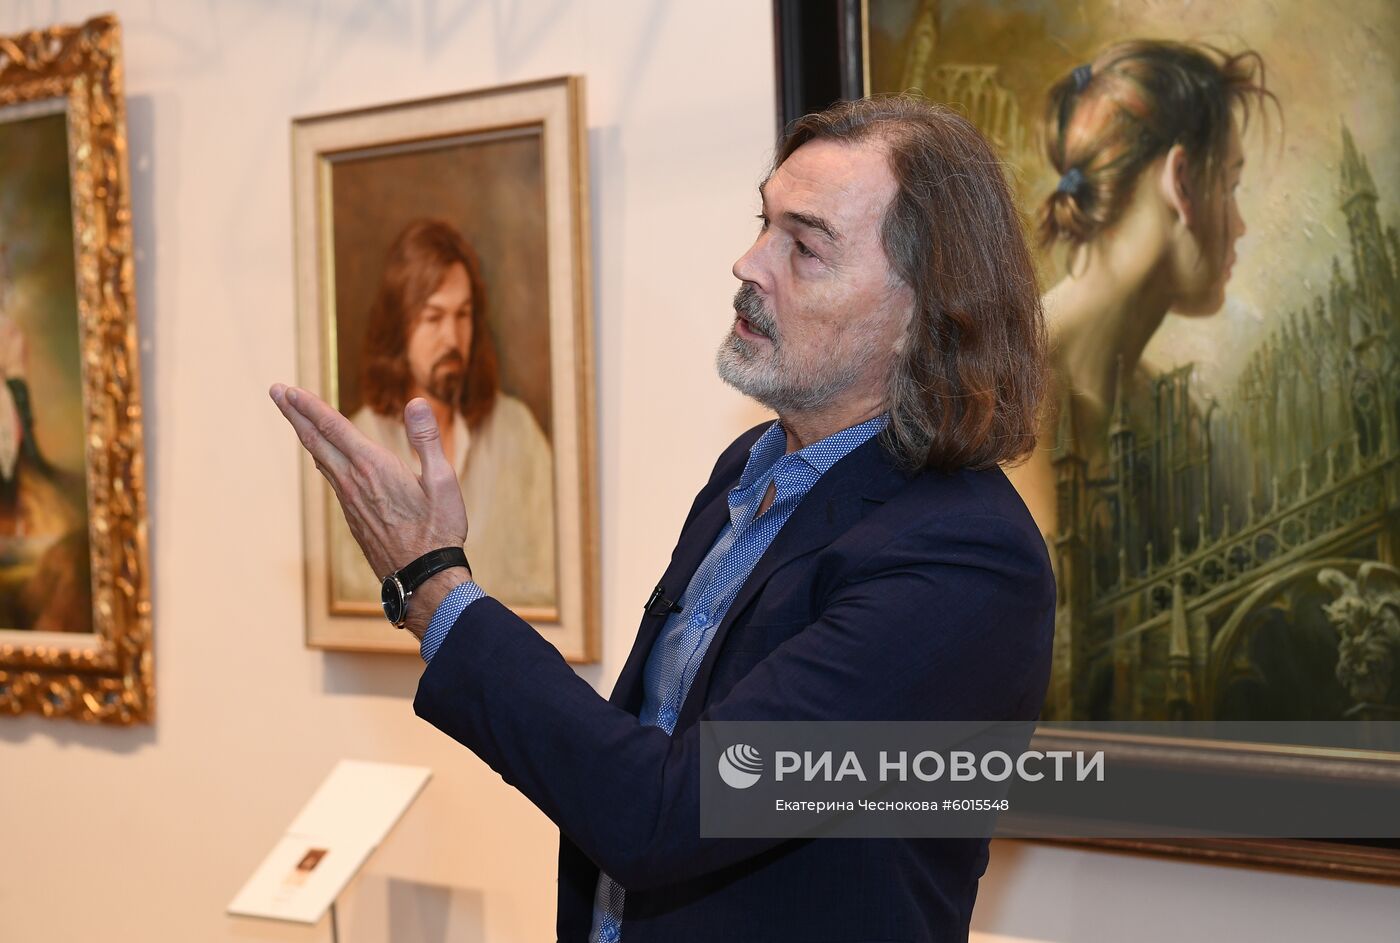 Открытие выставки Никаса Сафронова "Иные миры"